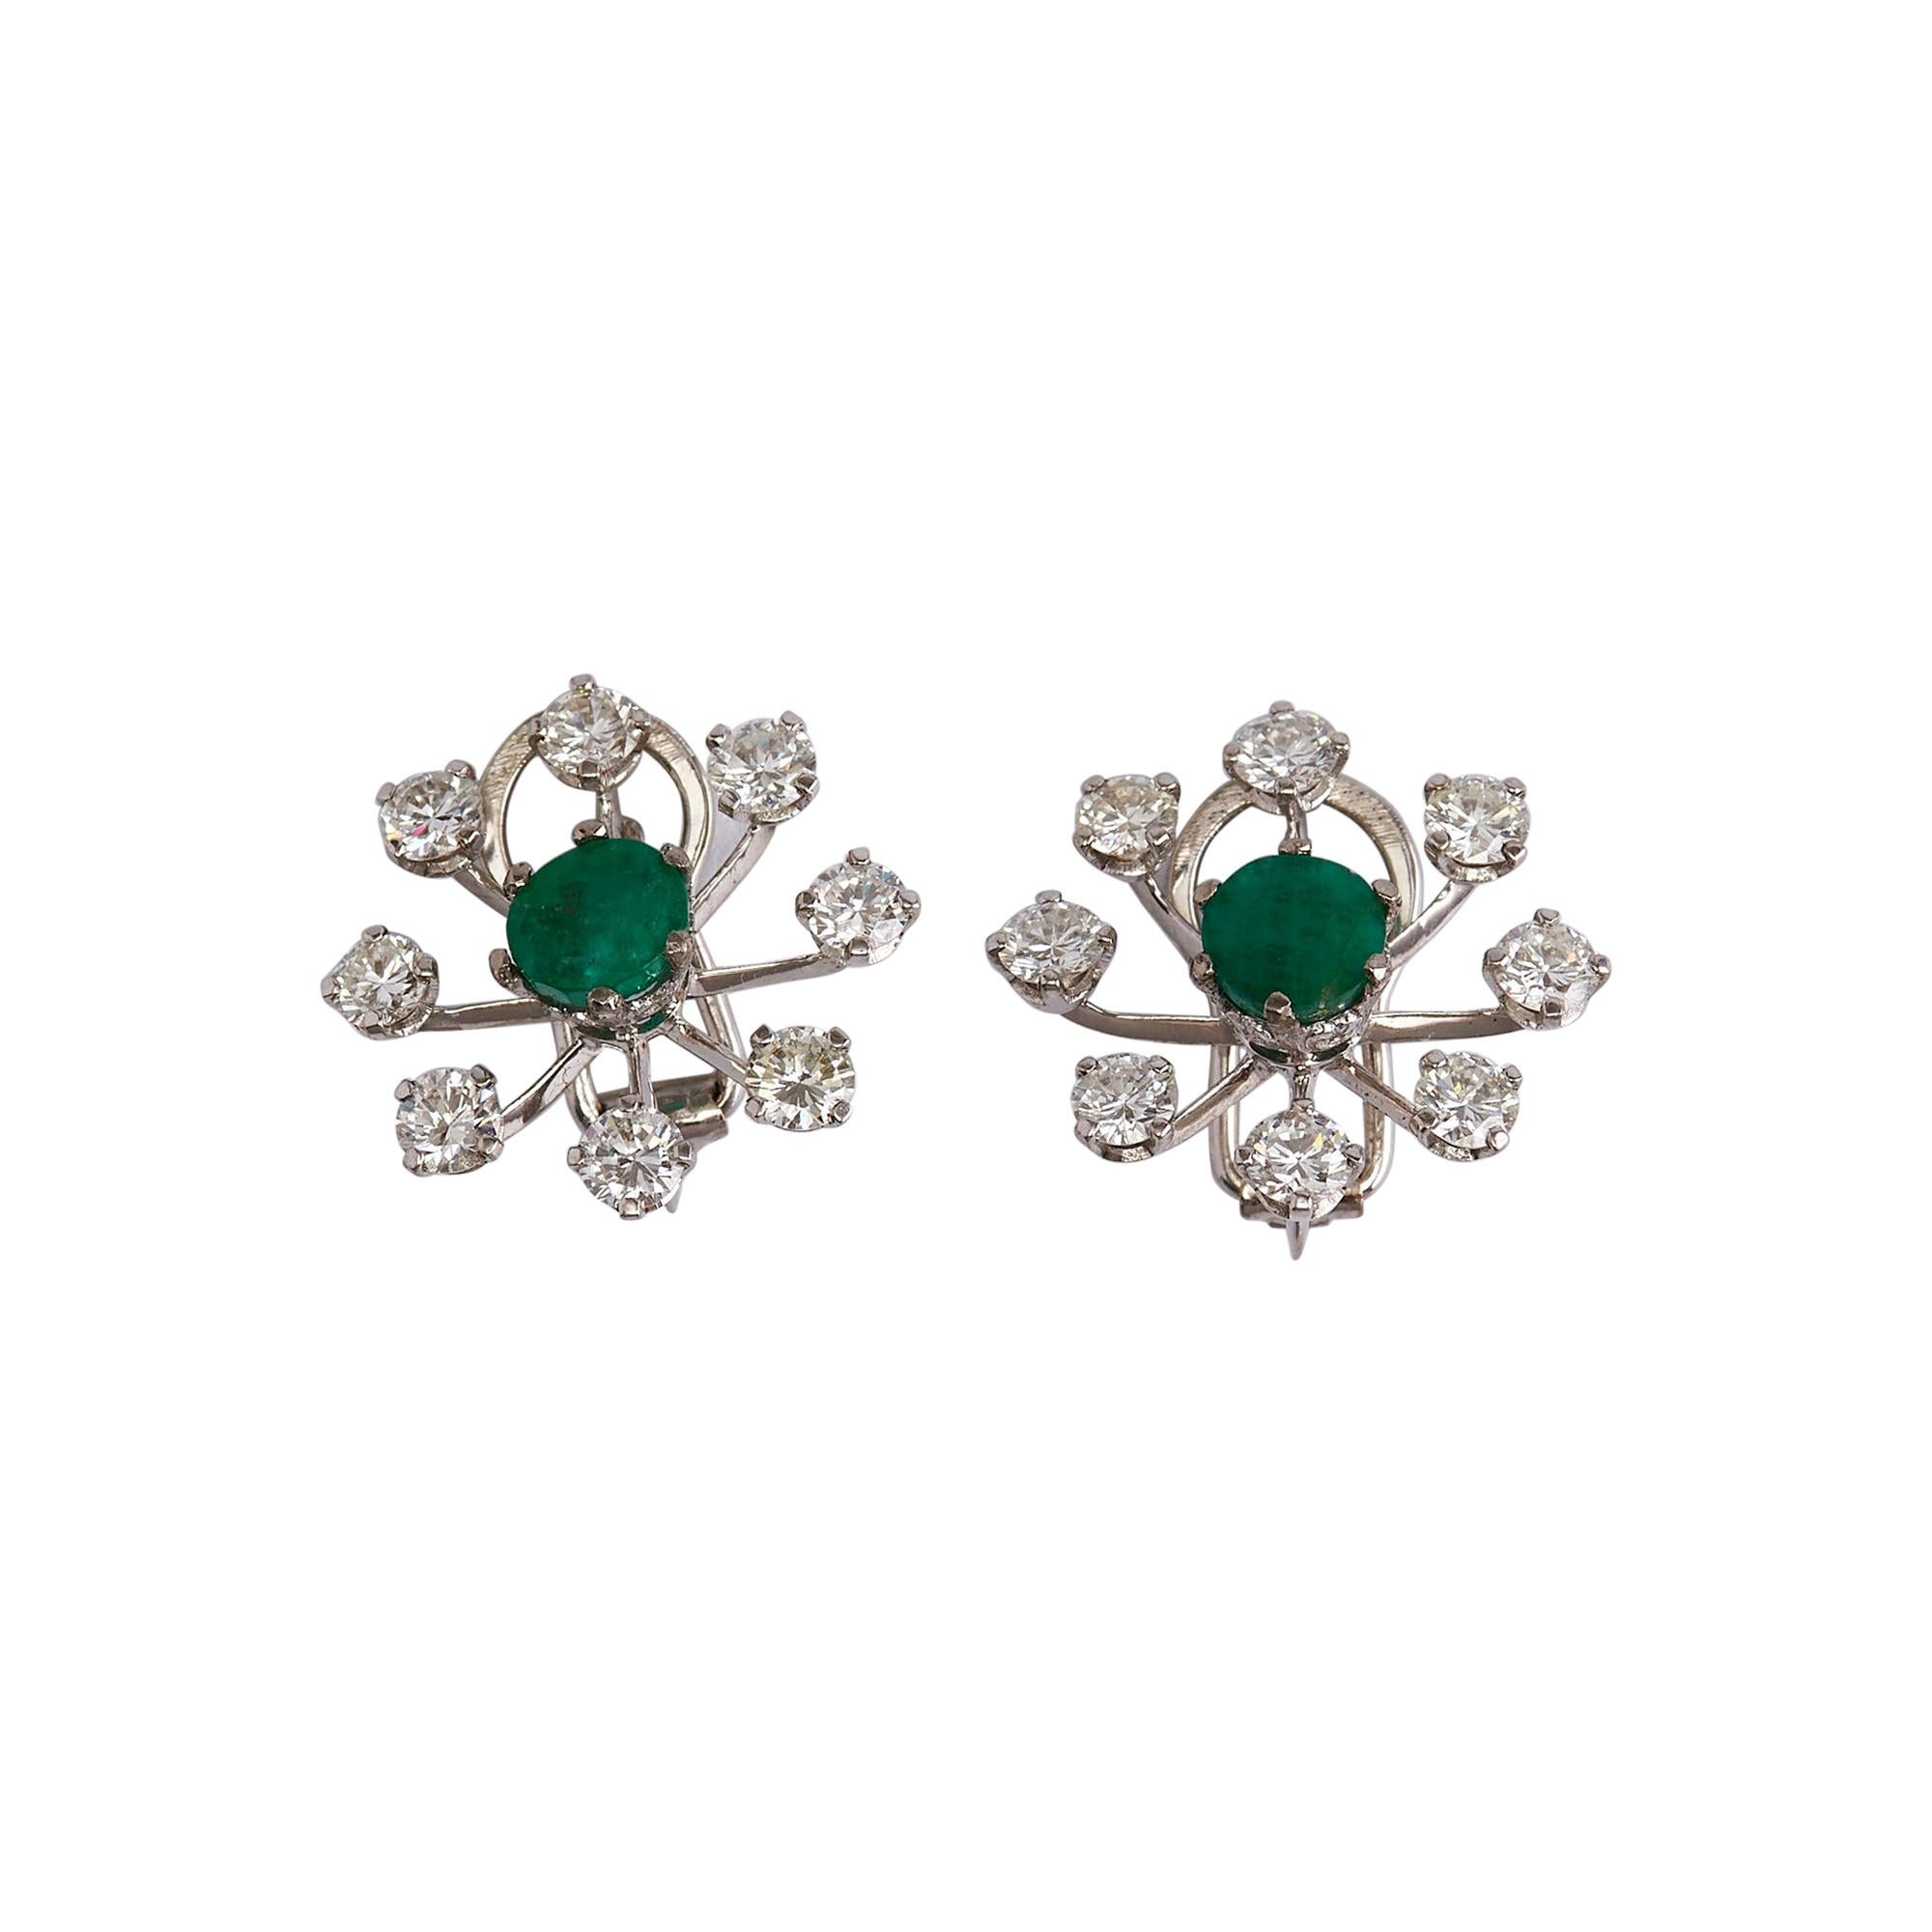 Pair of 18k White Gold Diamond and Emerald Flower Earrings